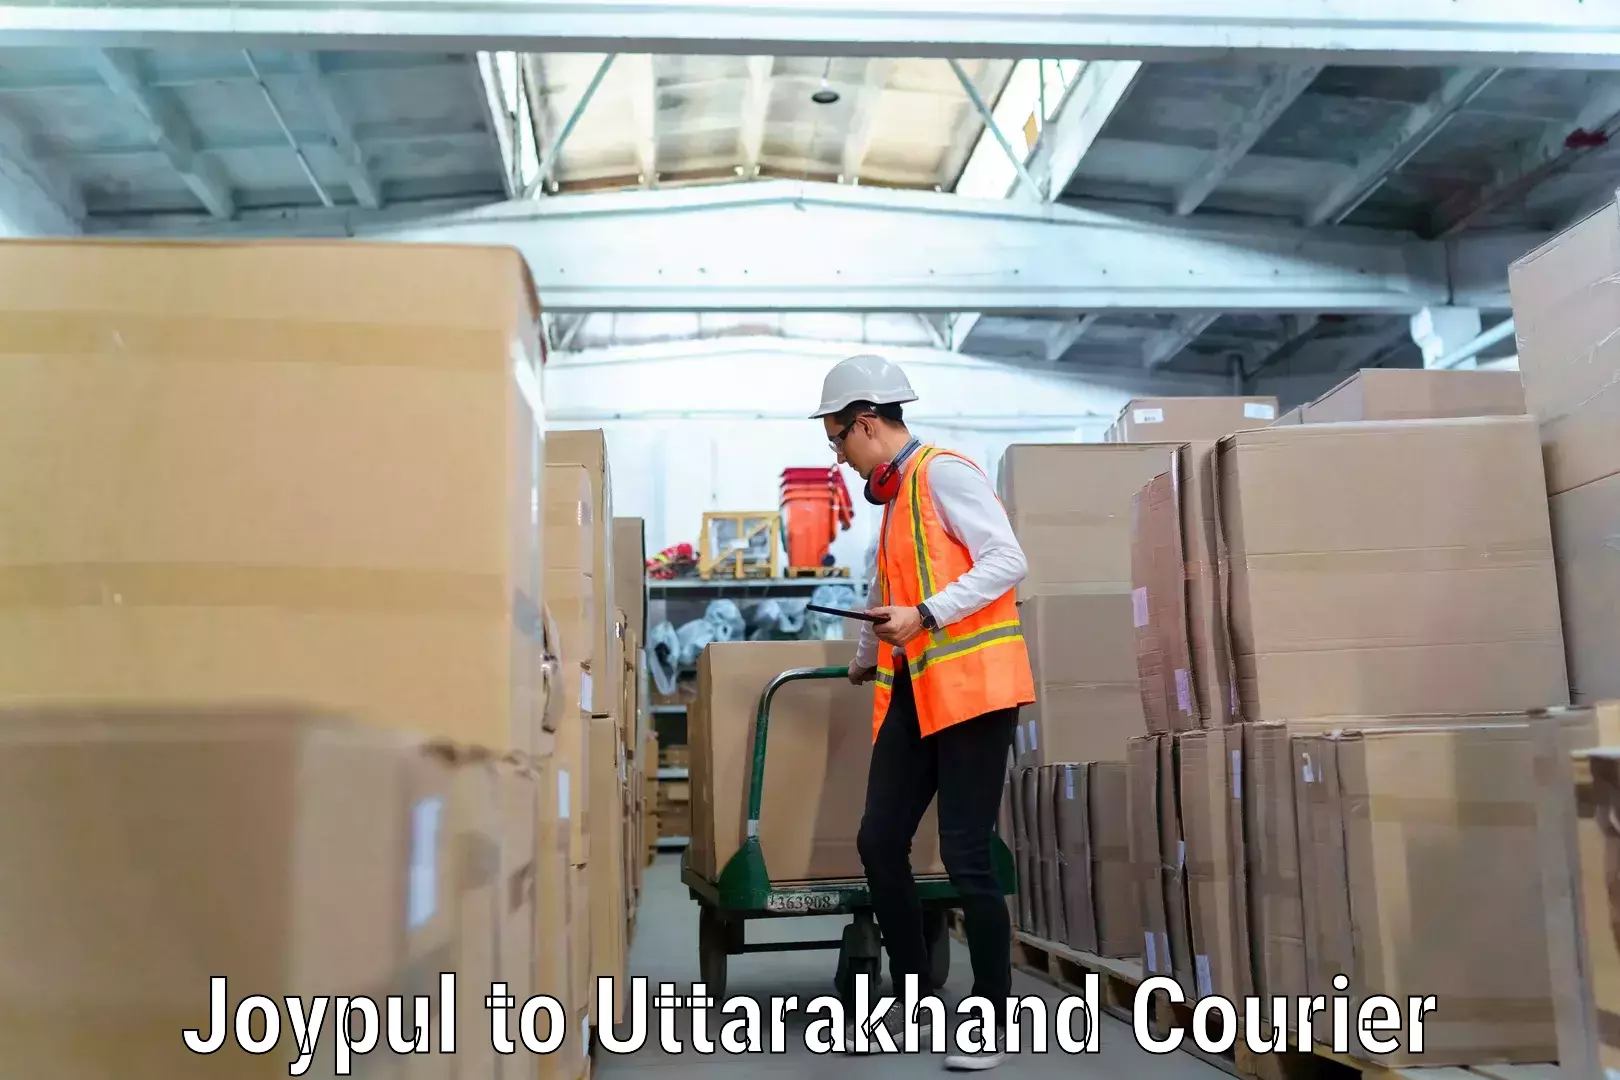 Moving and packing experts Joypul to Uttarakhand